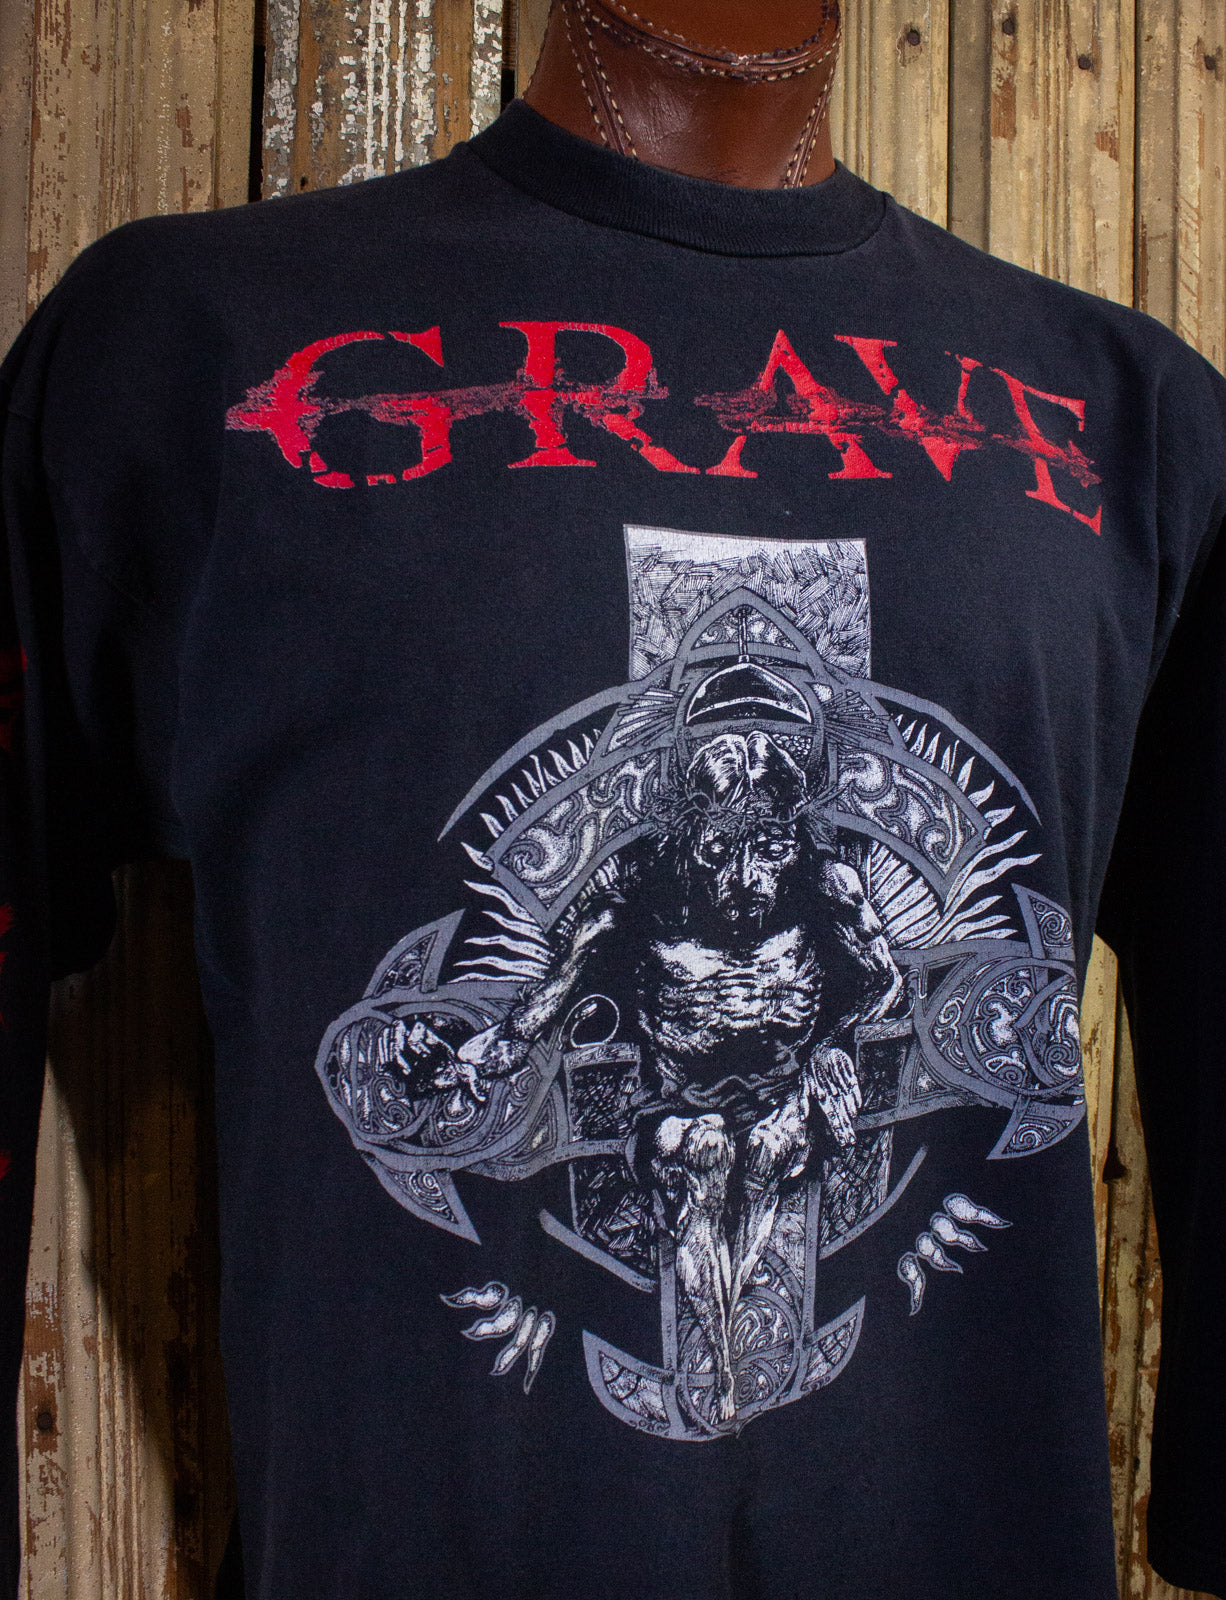 Vintage Grave European Tour Long Sleeve Concert T Shirt 1995 Black XL